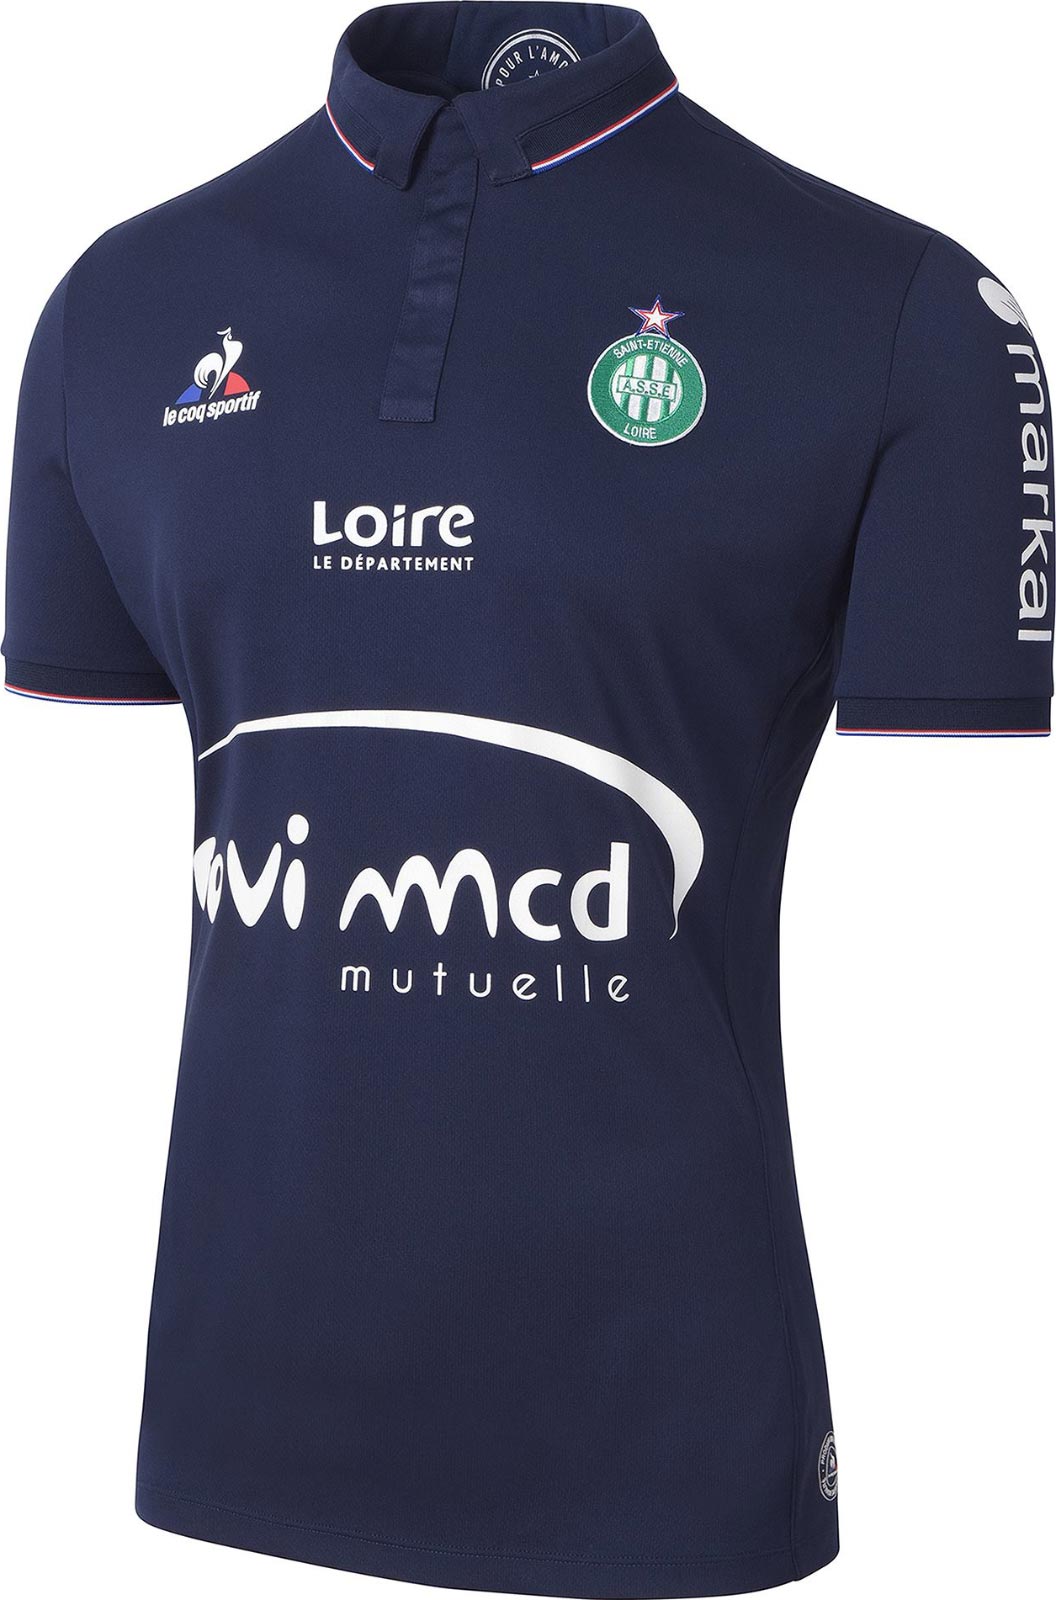 Maglie Ligue 1 2016/17